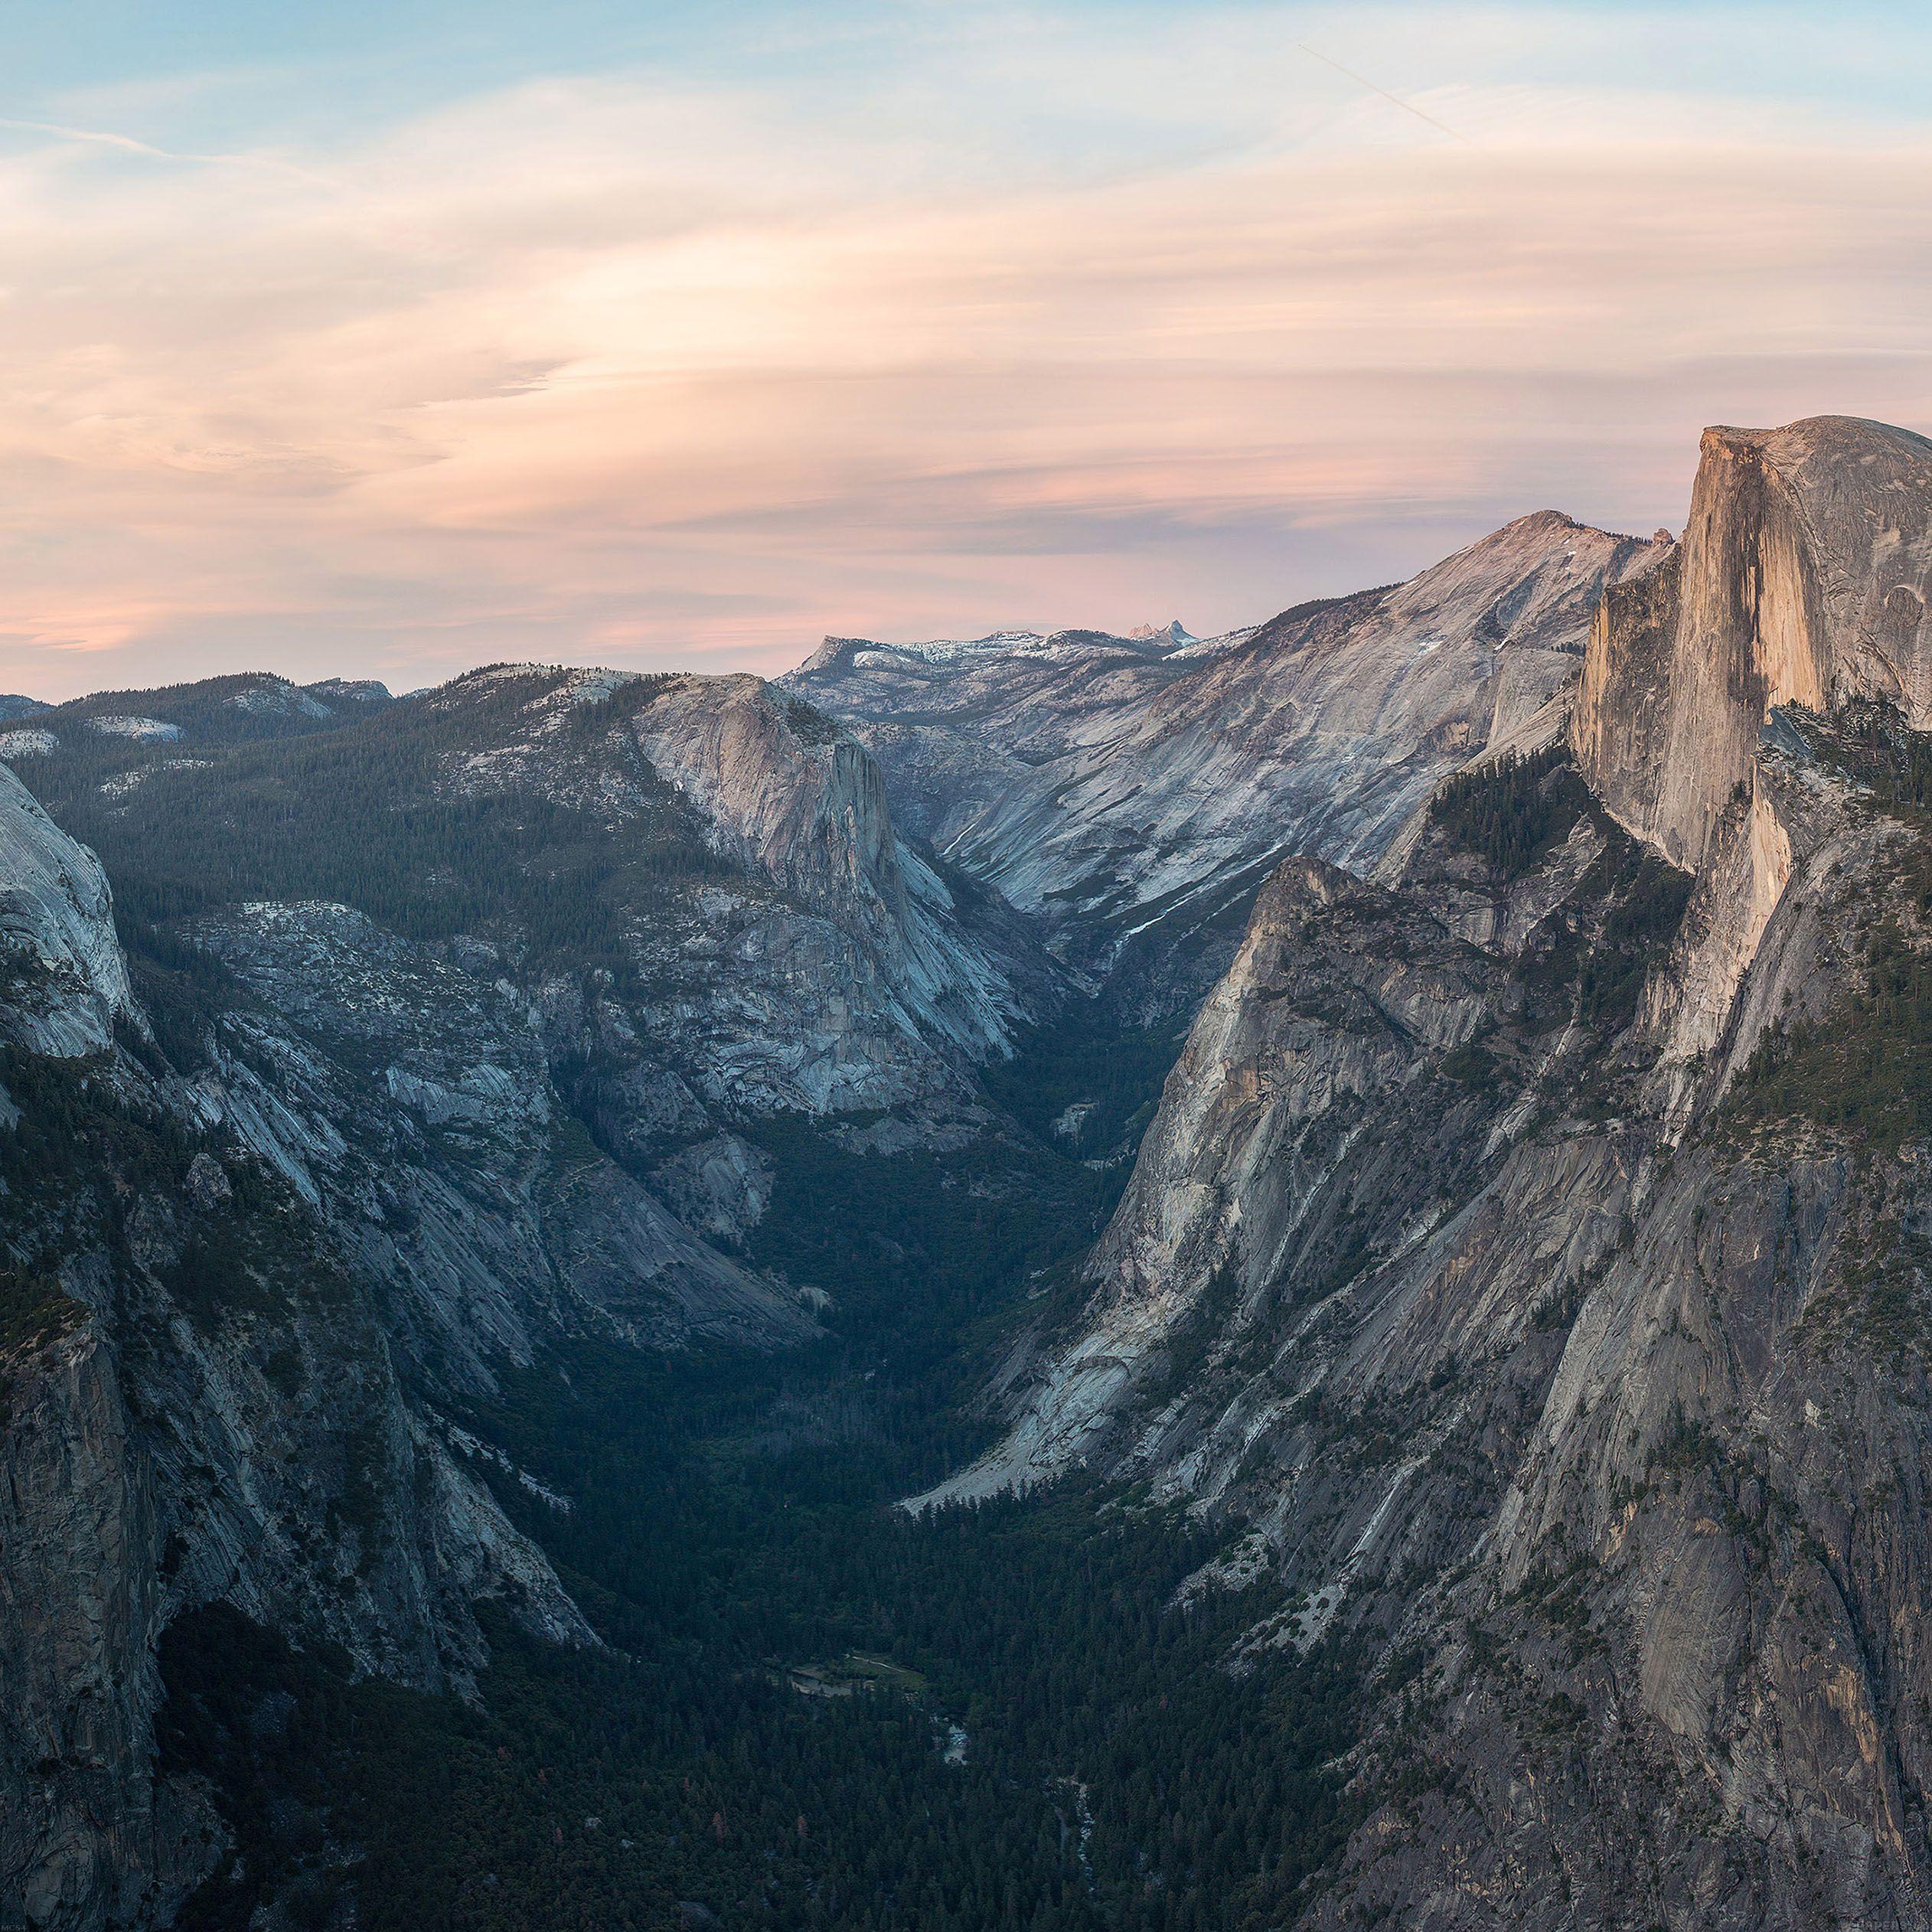 Yosemite Timelapse Live Wallpaper for iPhone  KYLE MESHNA